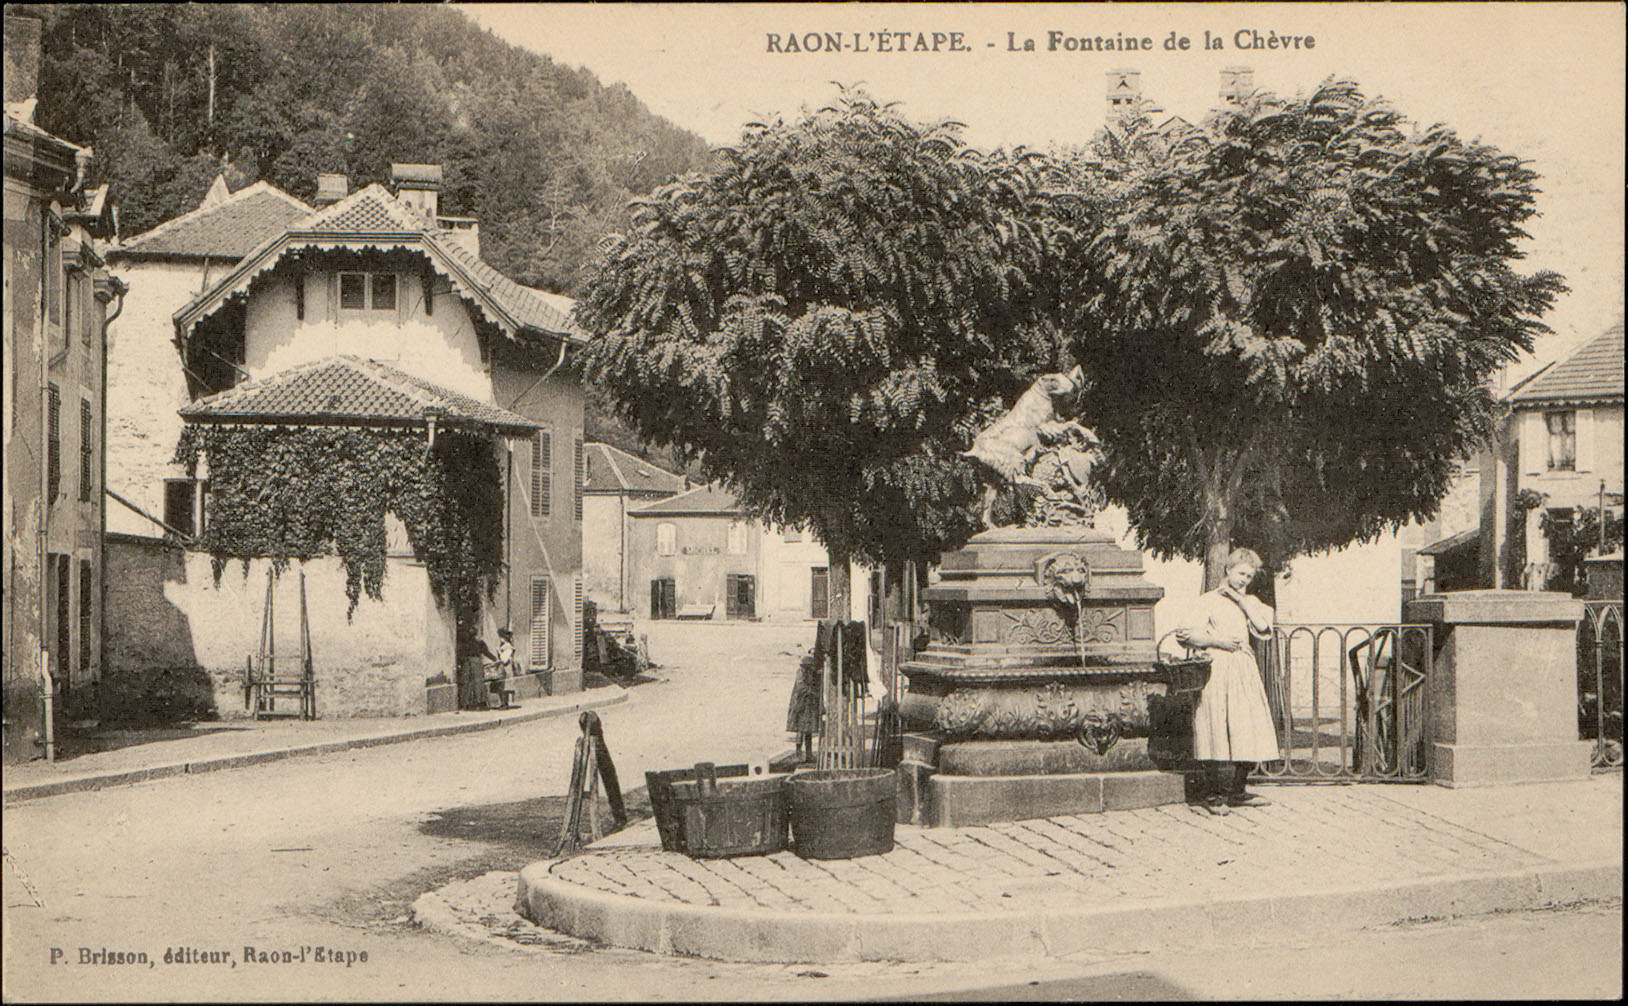 Contenu du Raon-L'Etape, La Fontaine de la Chèvre